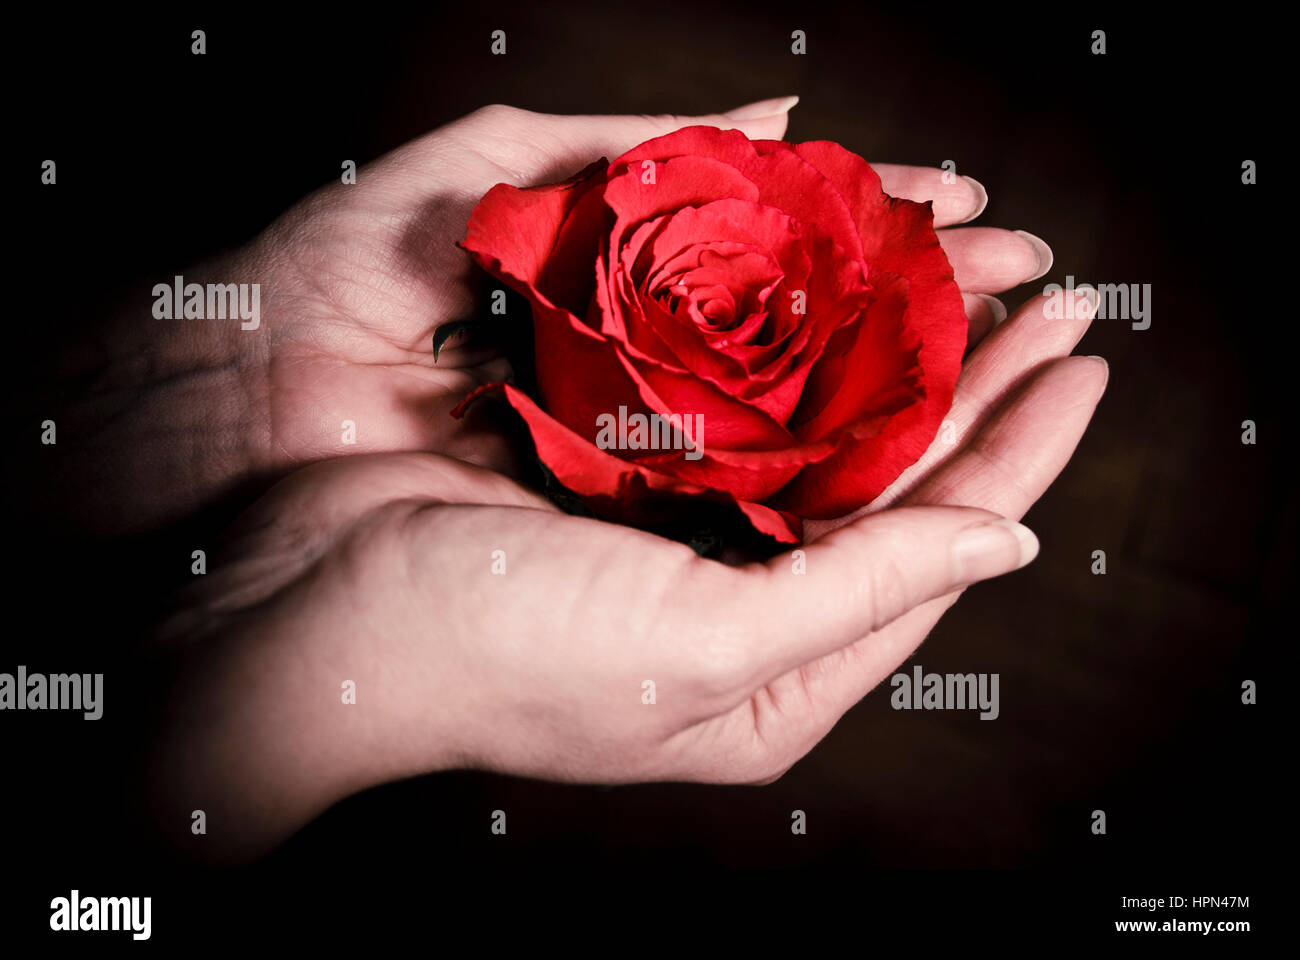 Mujeres manos sosteniendo una rosa roja, la feminidad, el amor y la pasión concepto Foto de stock